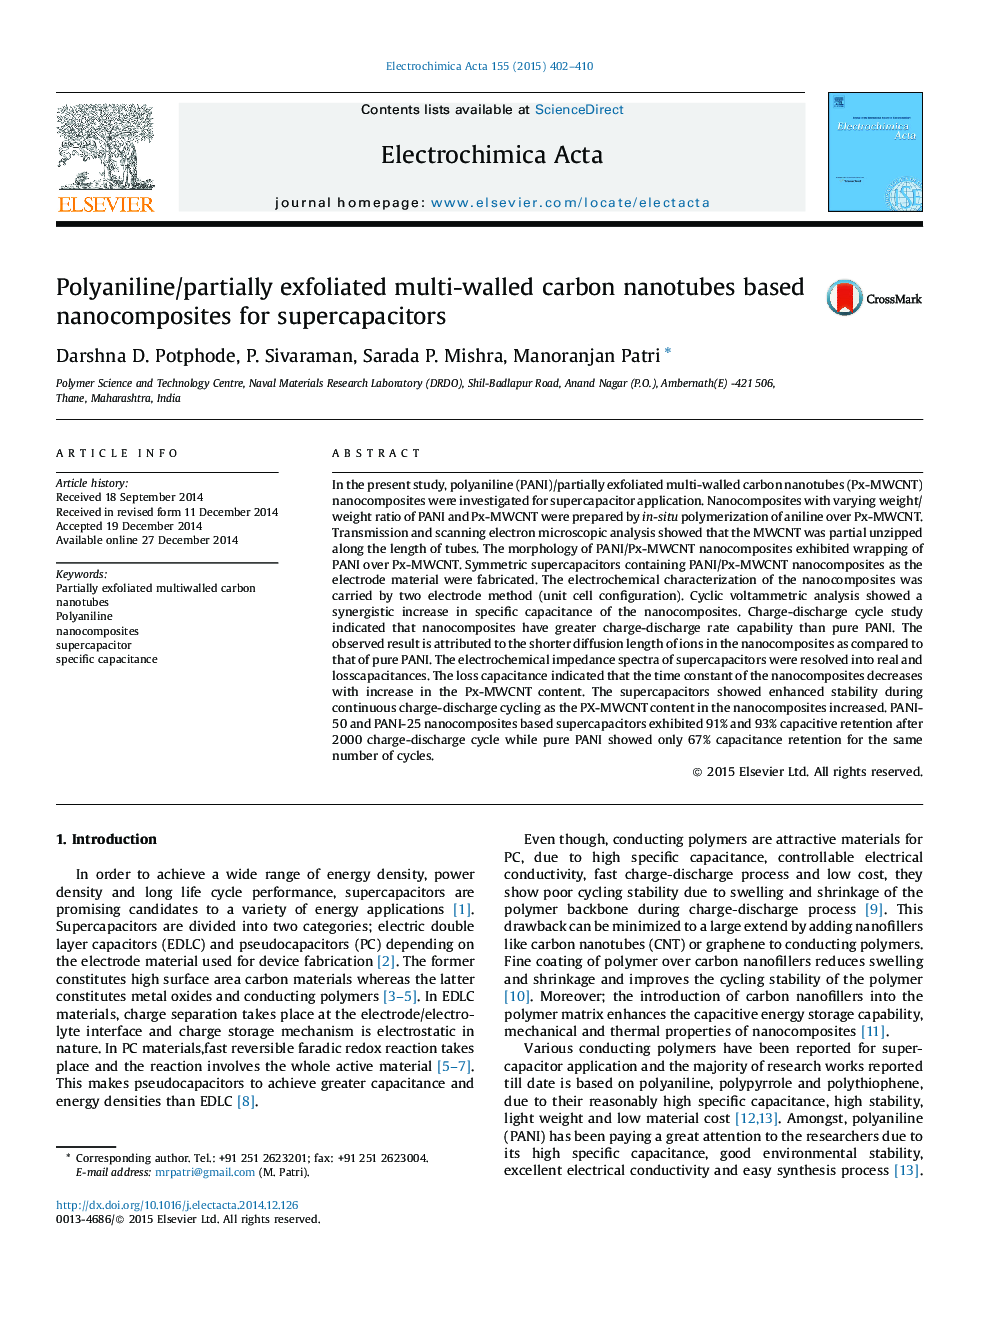 نانوکامپوزیت های مبتنی بر نانولوله های کربنی پلیانیلن / نیمه خالی 